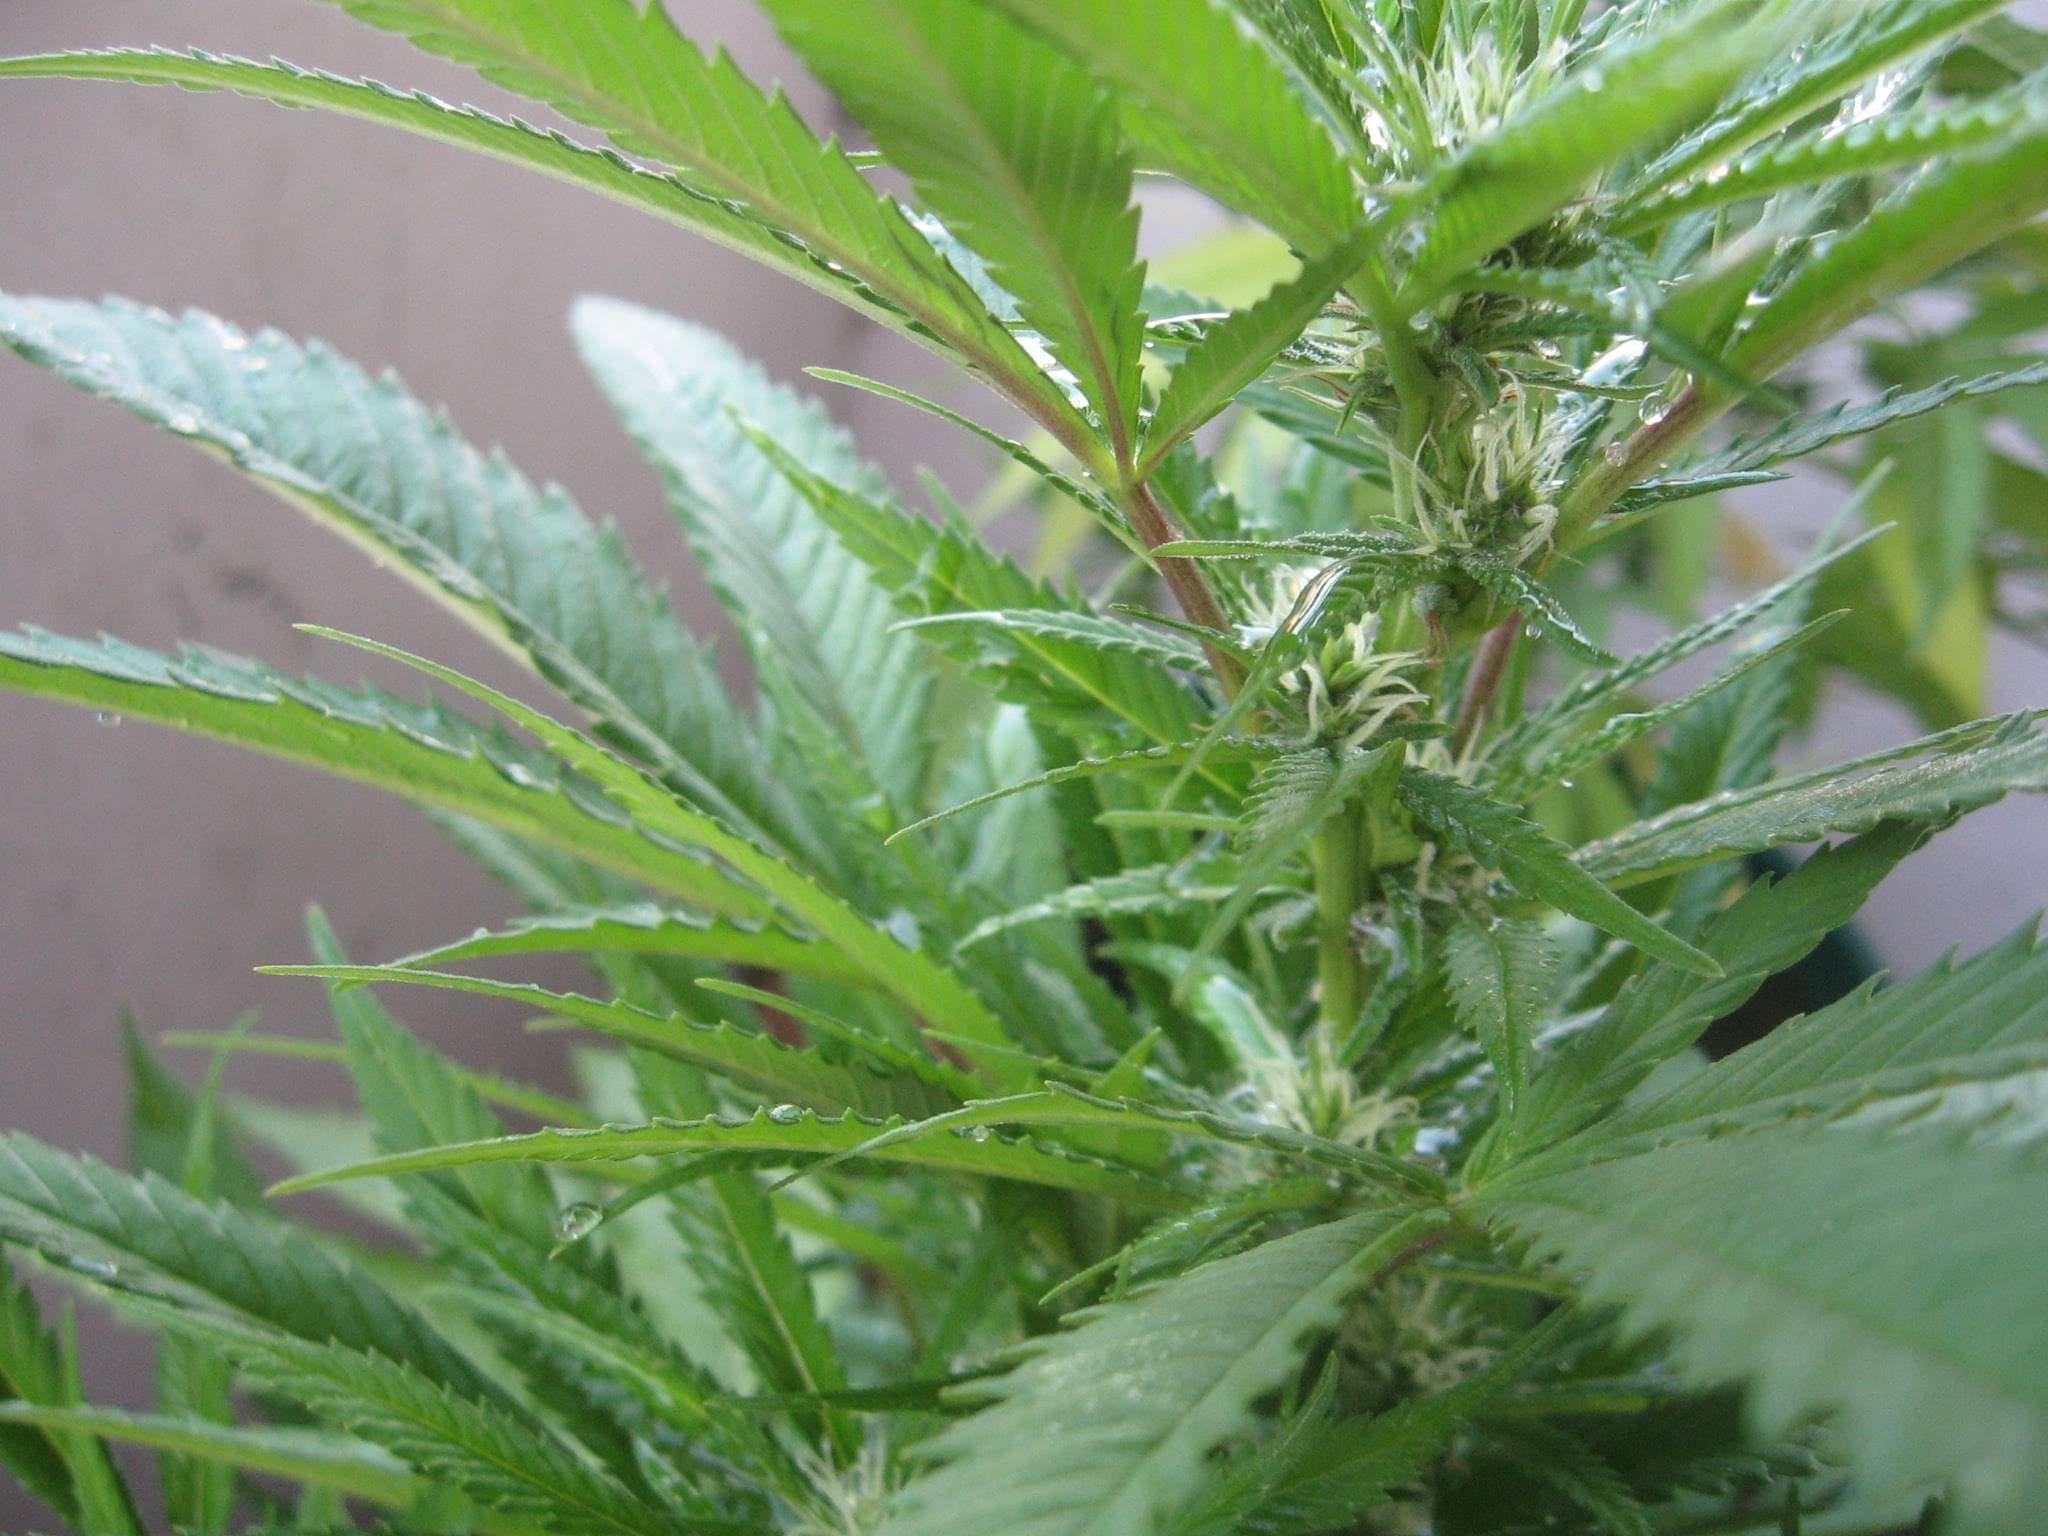 Cannabis in vegetative stage - week 7